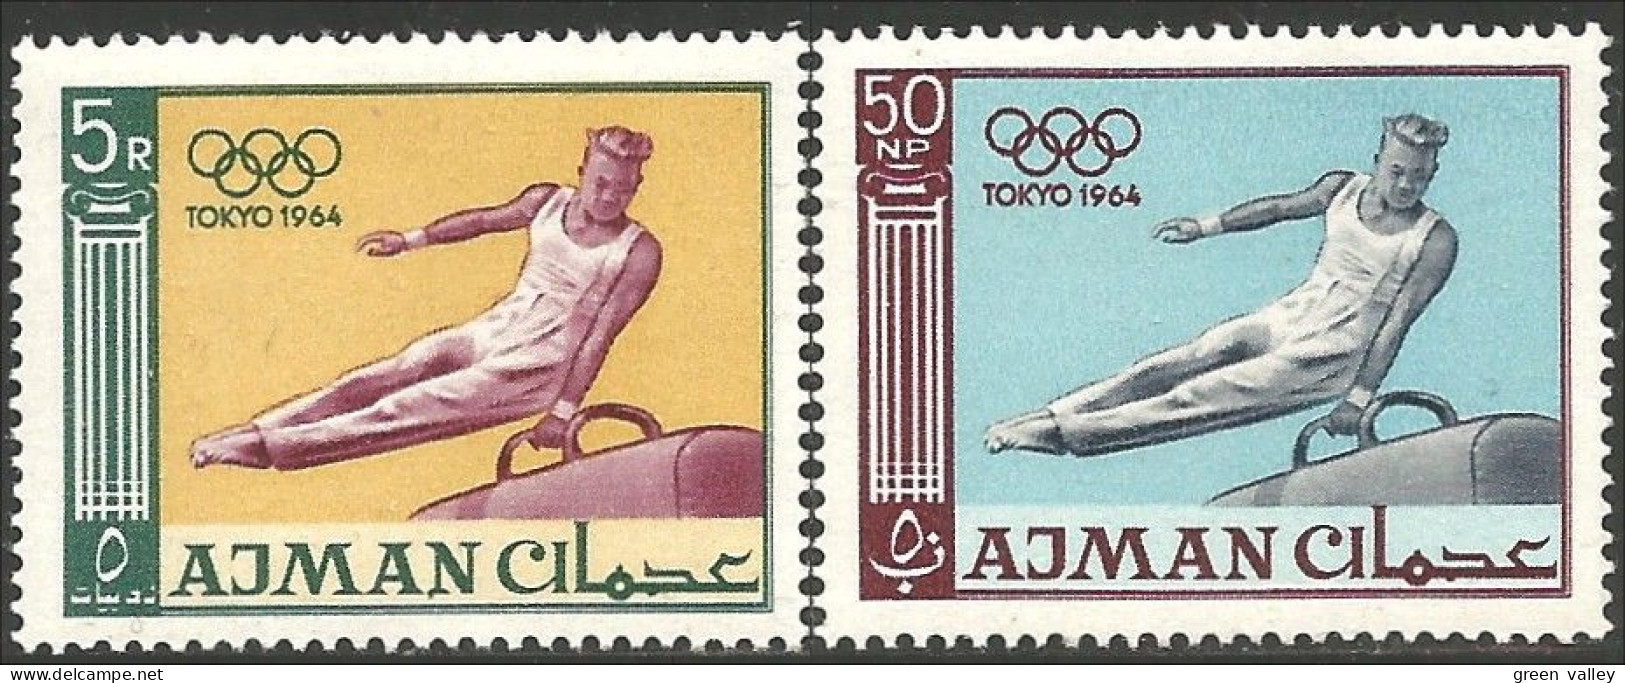 116 Ajman 1964 Olympics Tokyo Gymnastics Gymnastique MNH ** Neuf SC (AJM-144) - Gymnastique